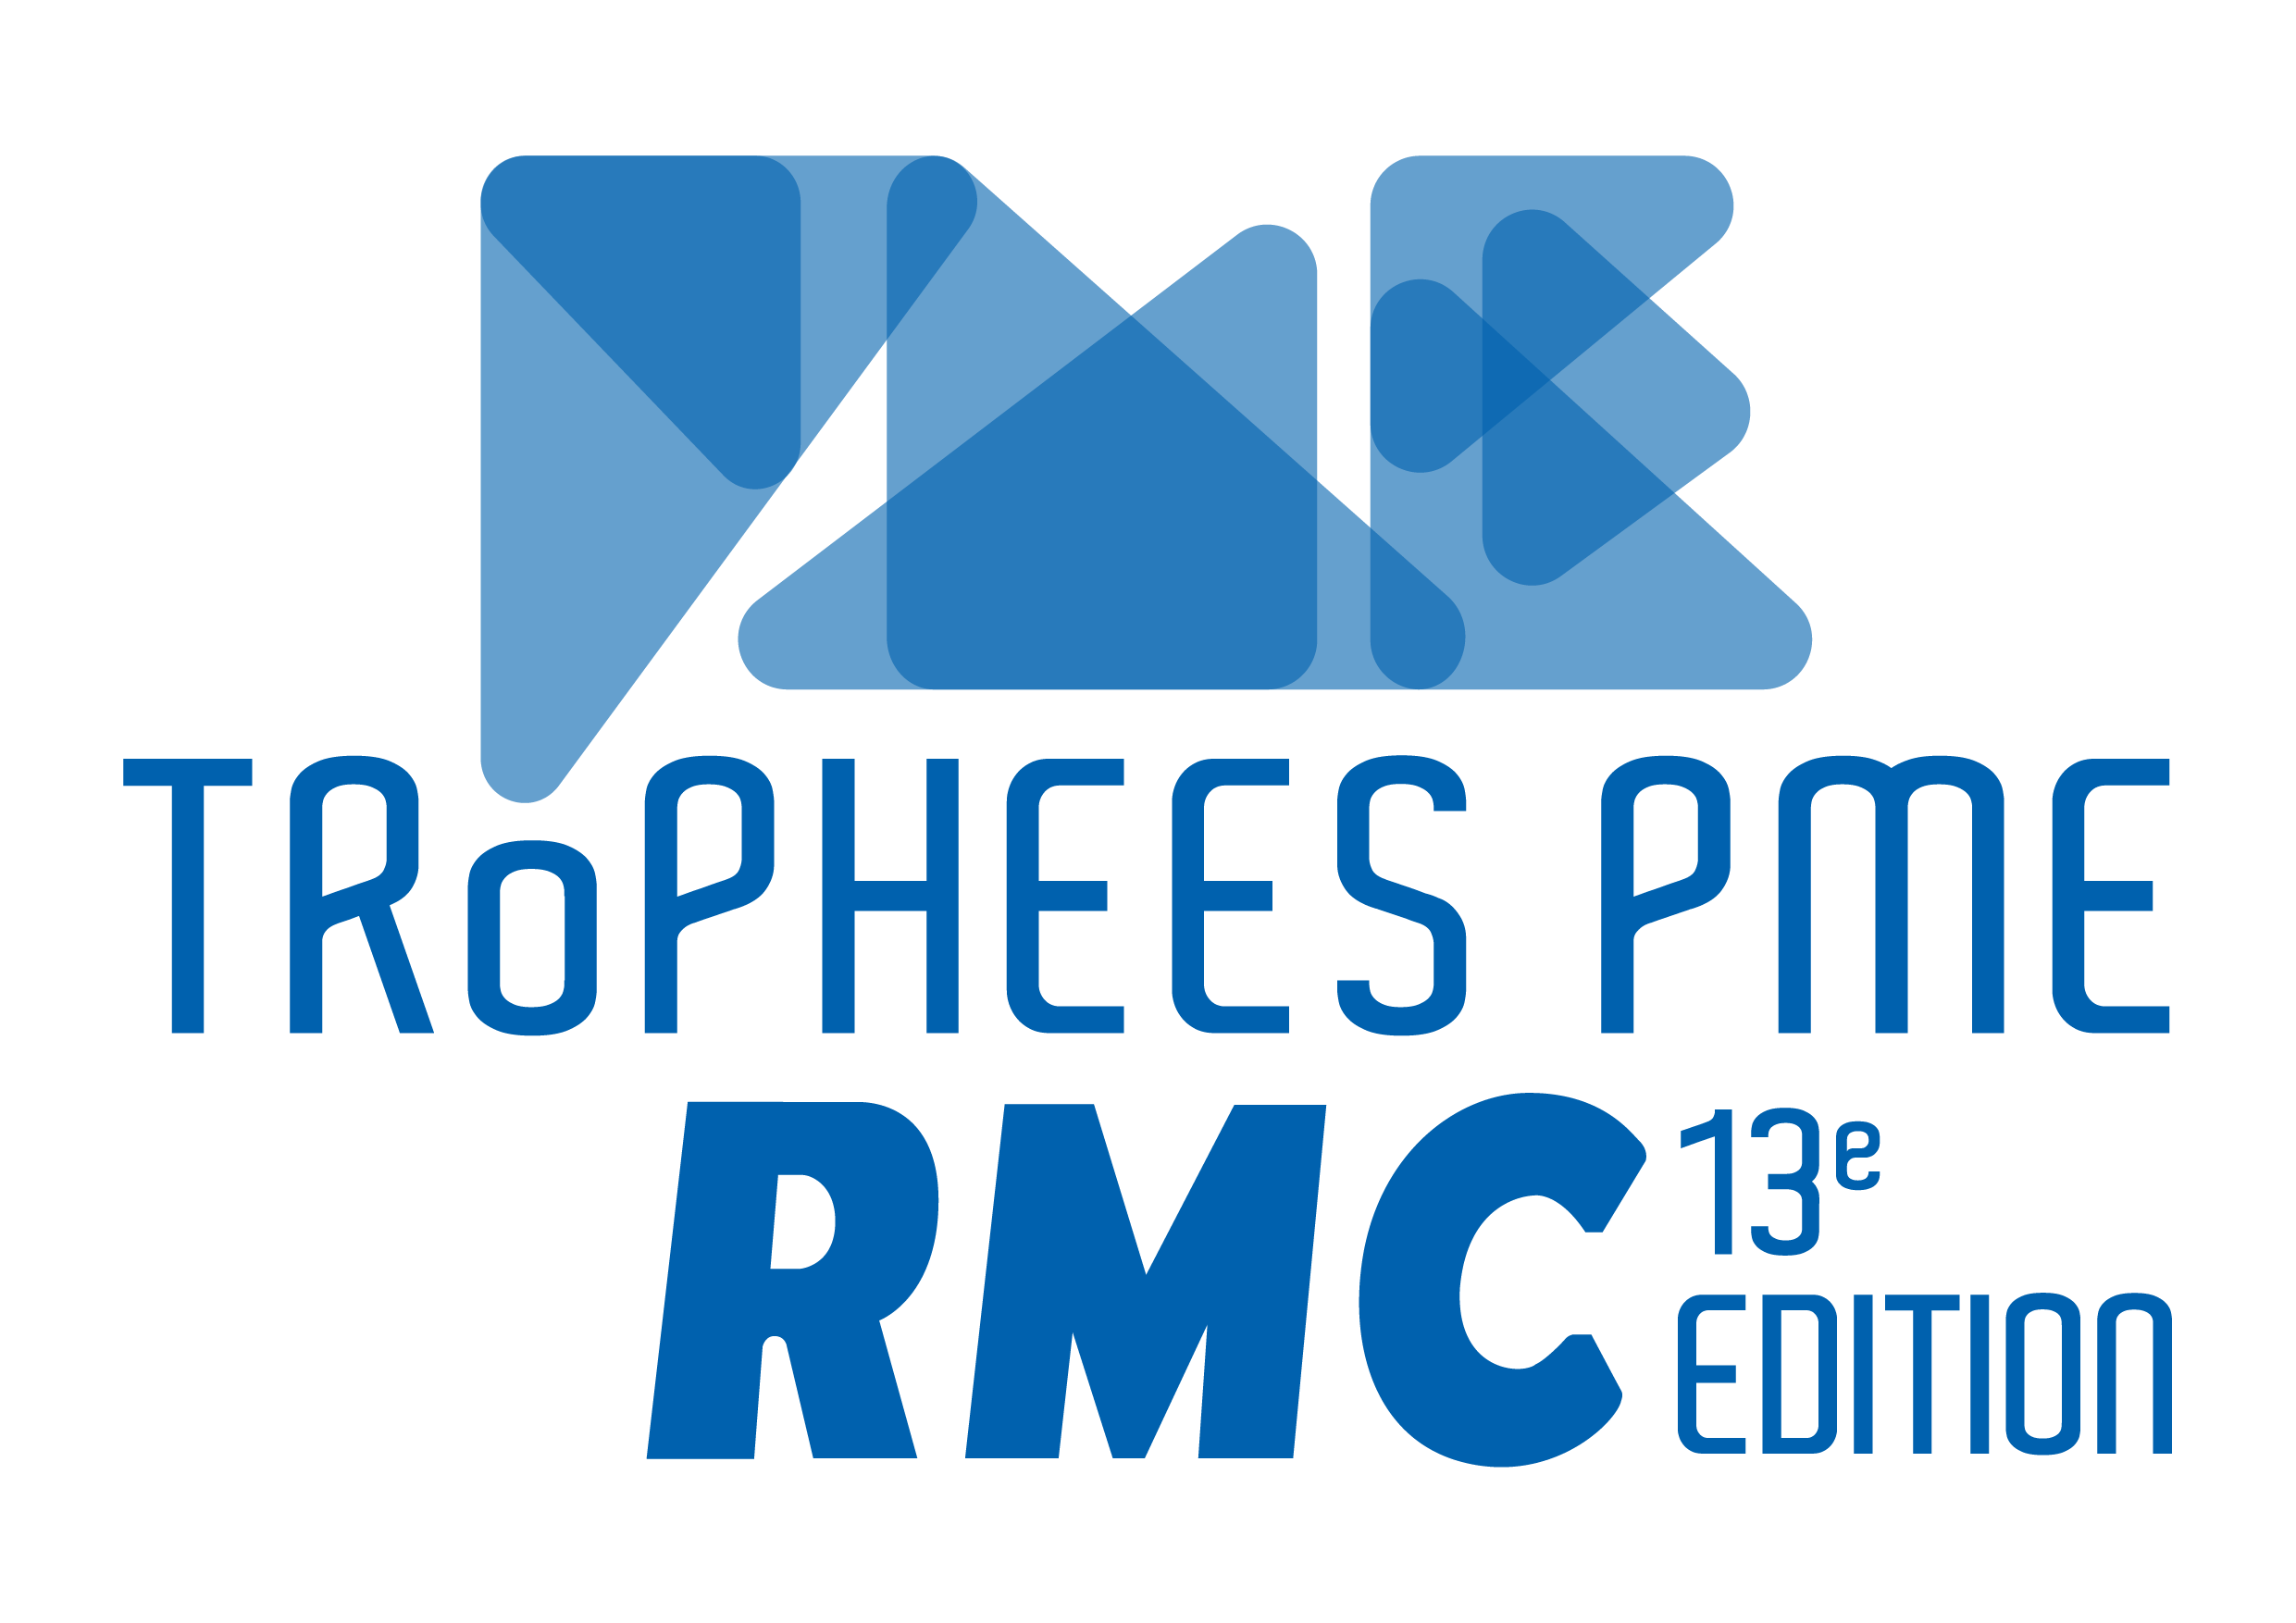 Trophées PME RMC - Candidature 2022